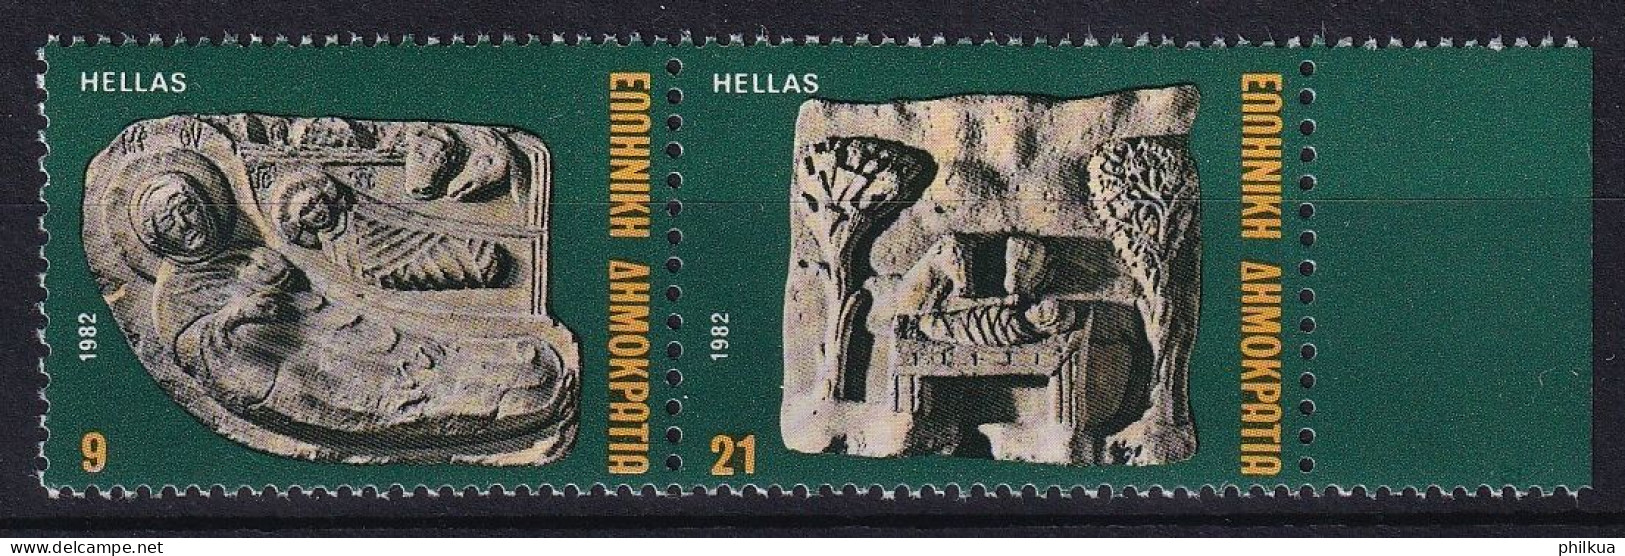 MiNr. 1503 - 1504 Griechenland 1982, 6. Dez. Weihnachten - Postfrisch/**/MNH - Unused Stamps